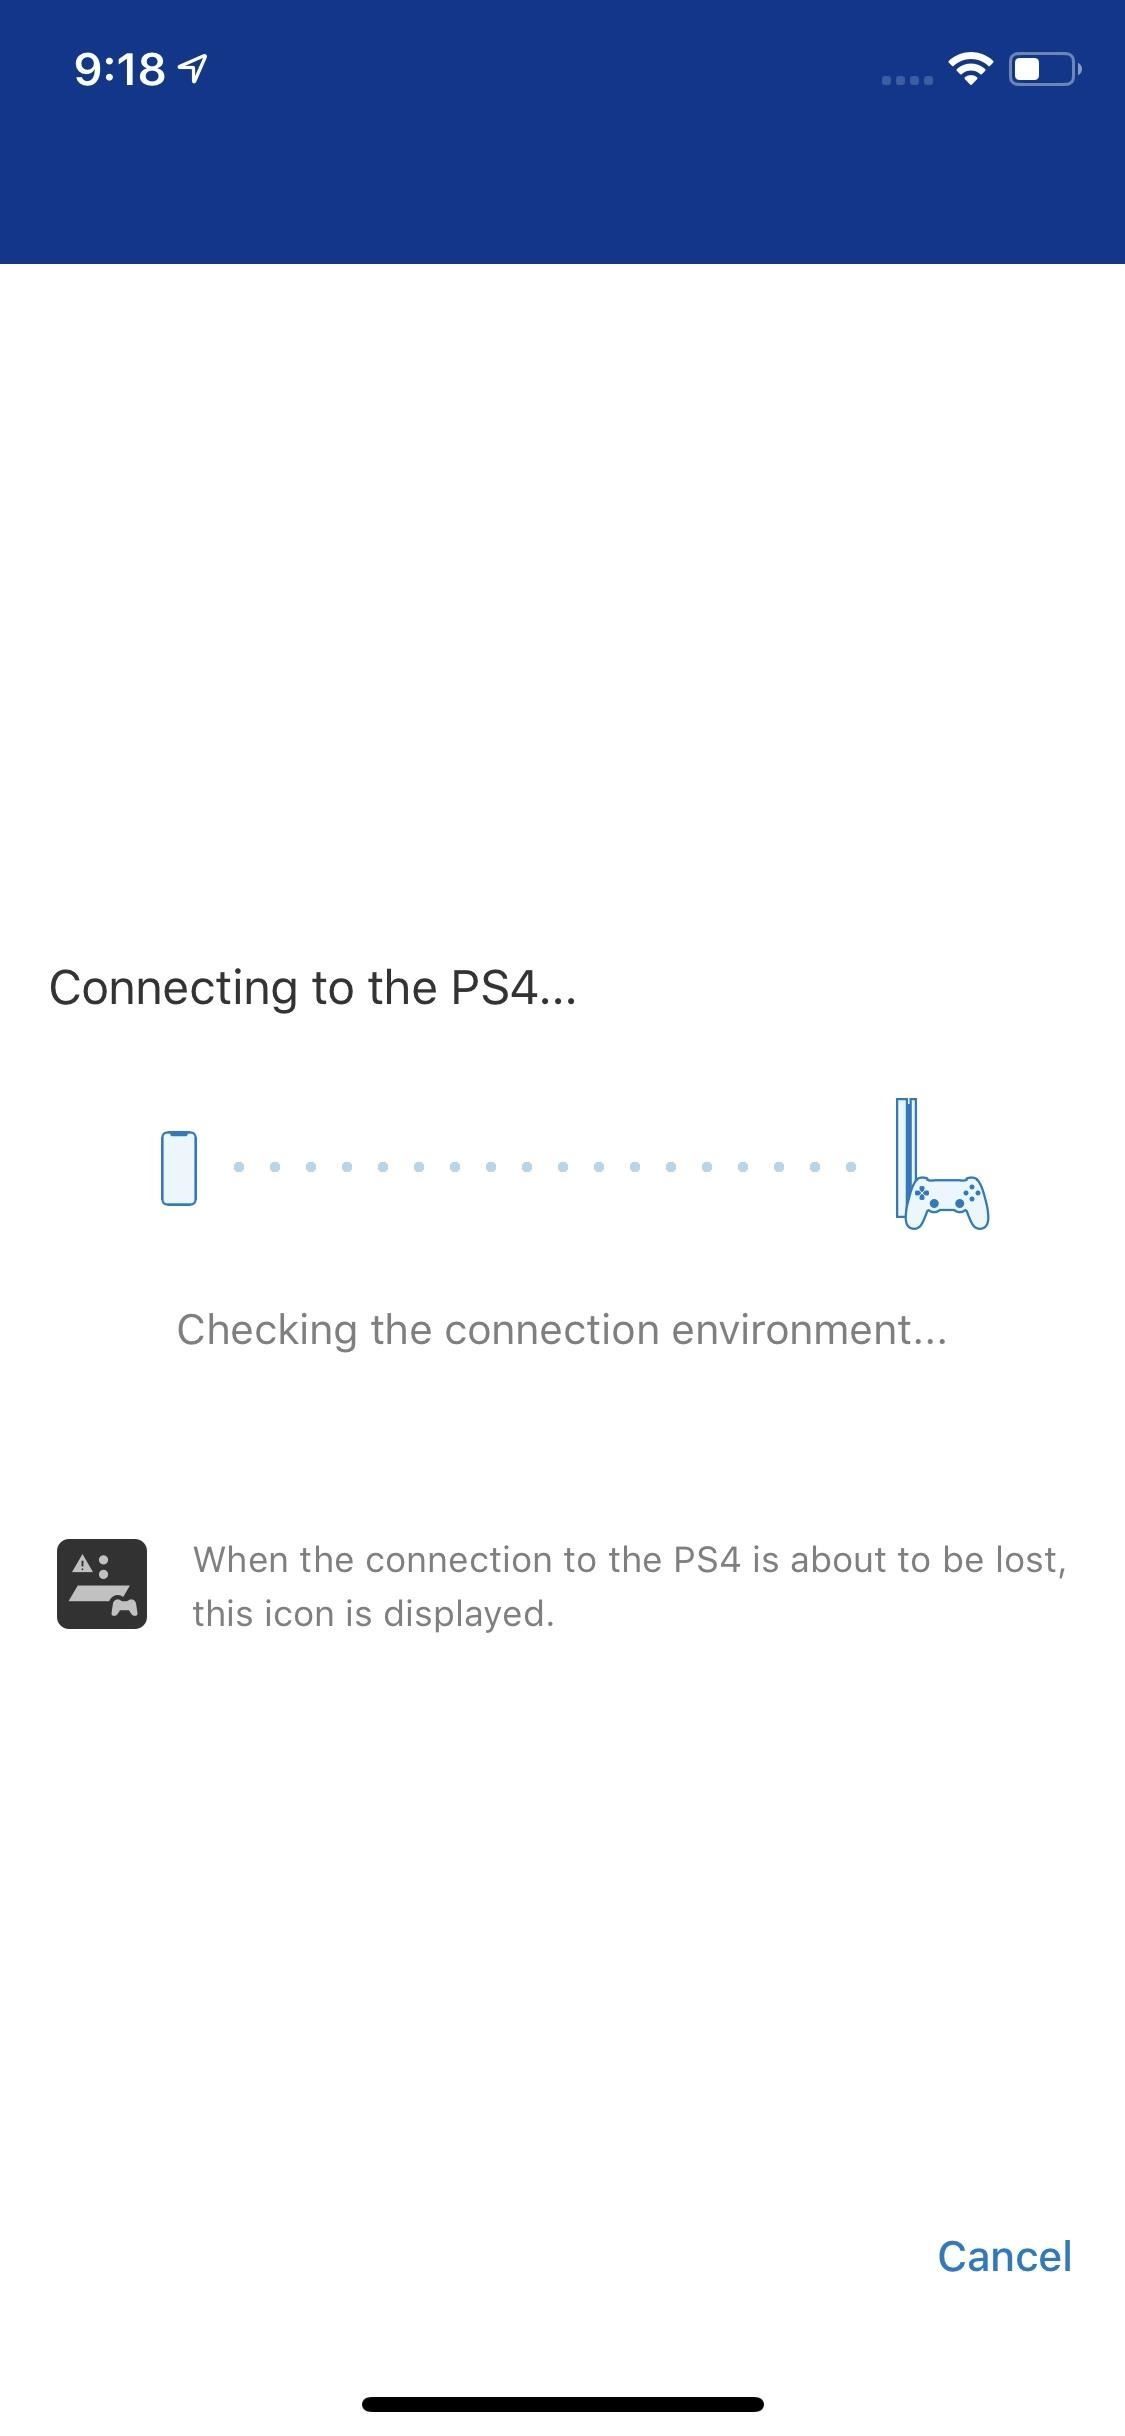 Как играть в свои собственные игры для PS4 на iPhone с Sony